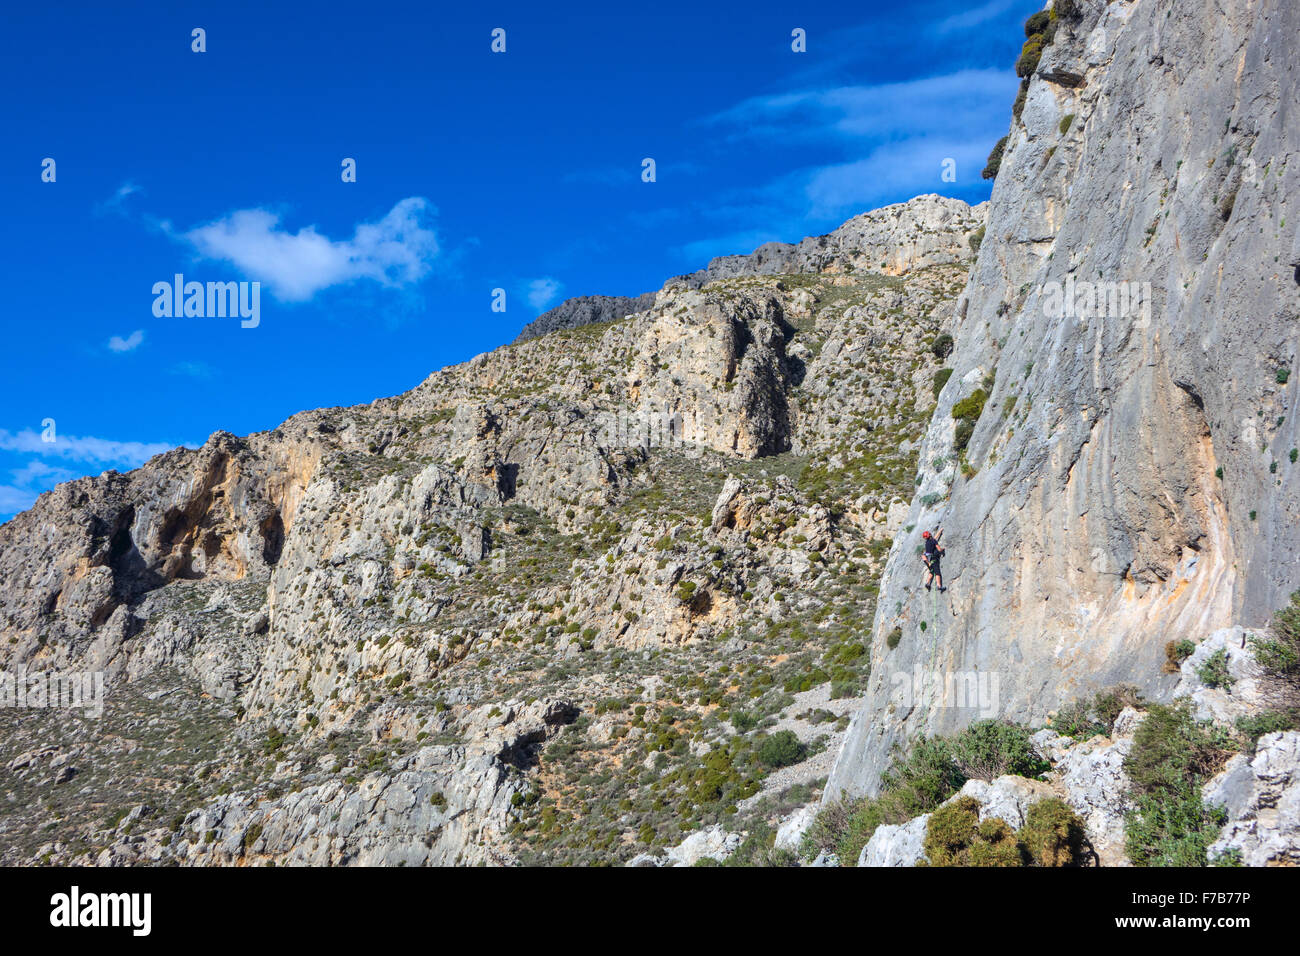 Escalade sur falaise calcaire ensoleillée, l'escalade sportive, Grèce Banque D'Images